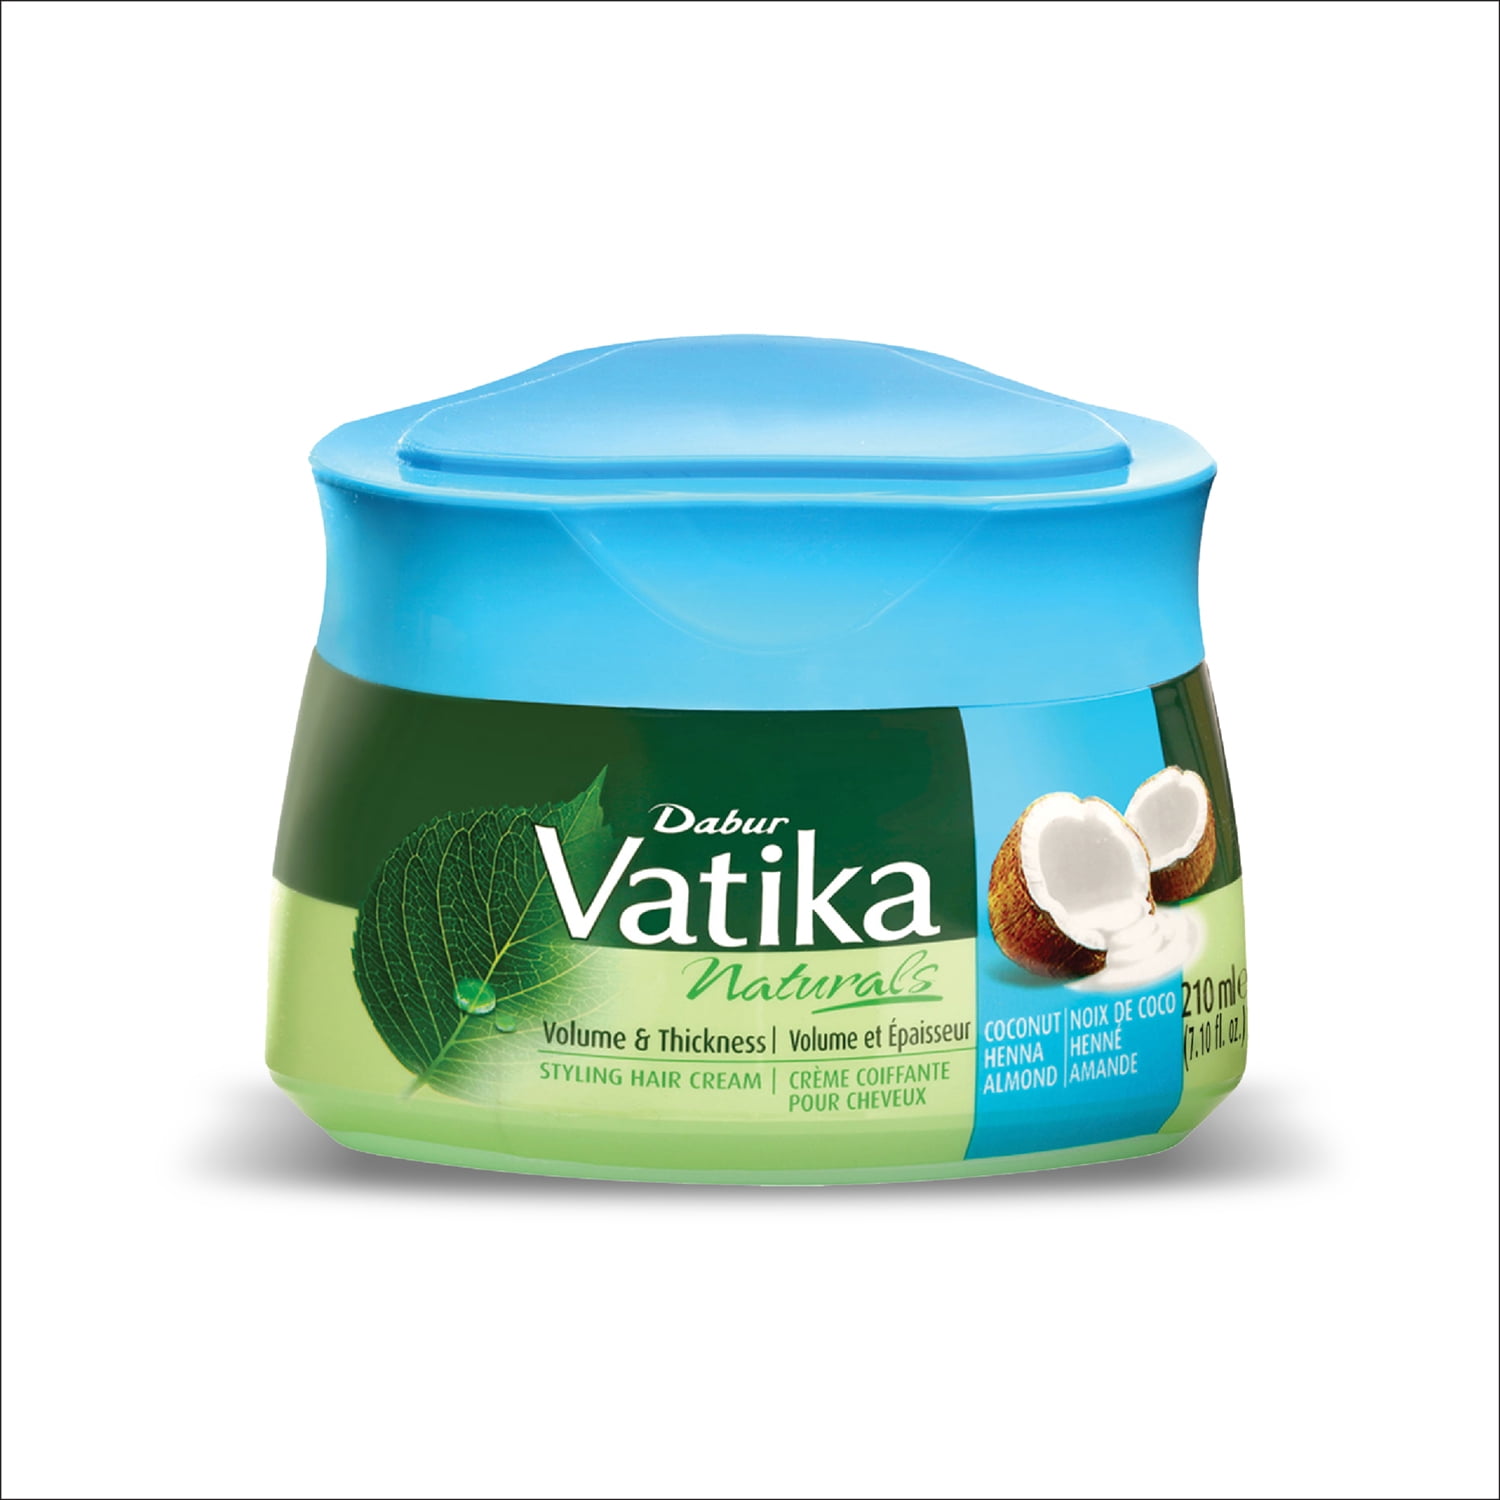 Dabur Vatika Naturals Styling Hair Cream 210ml (Volume & Thickness) -  